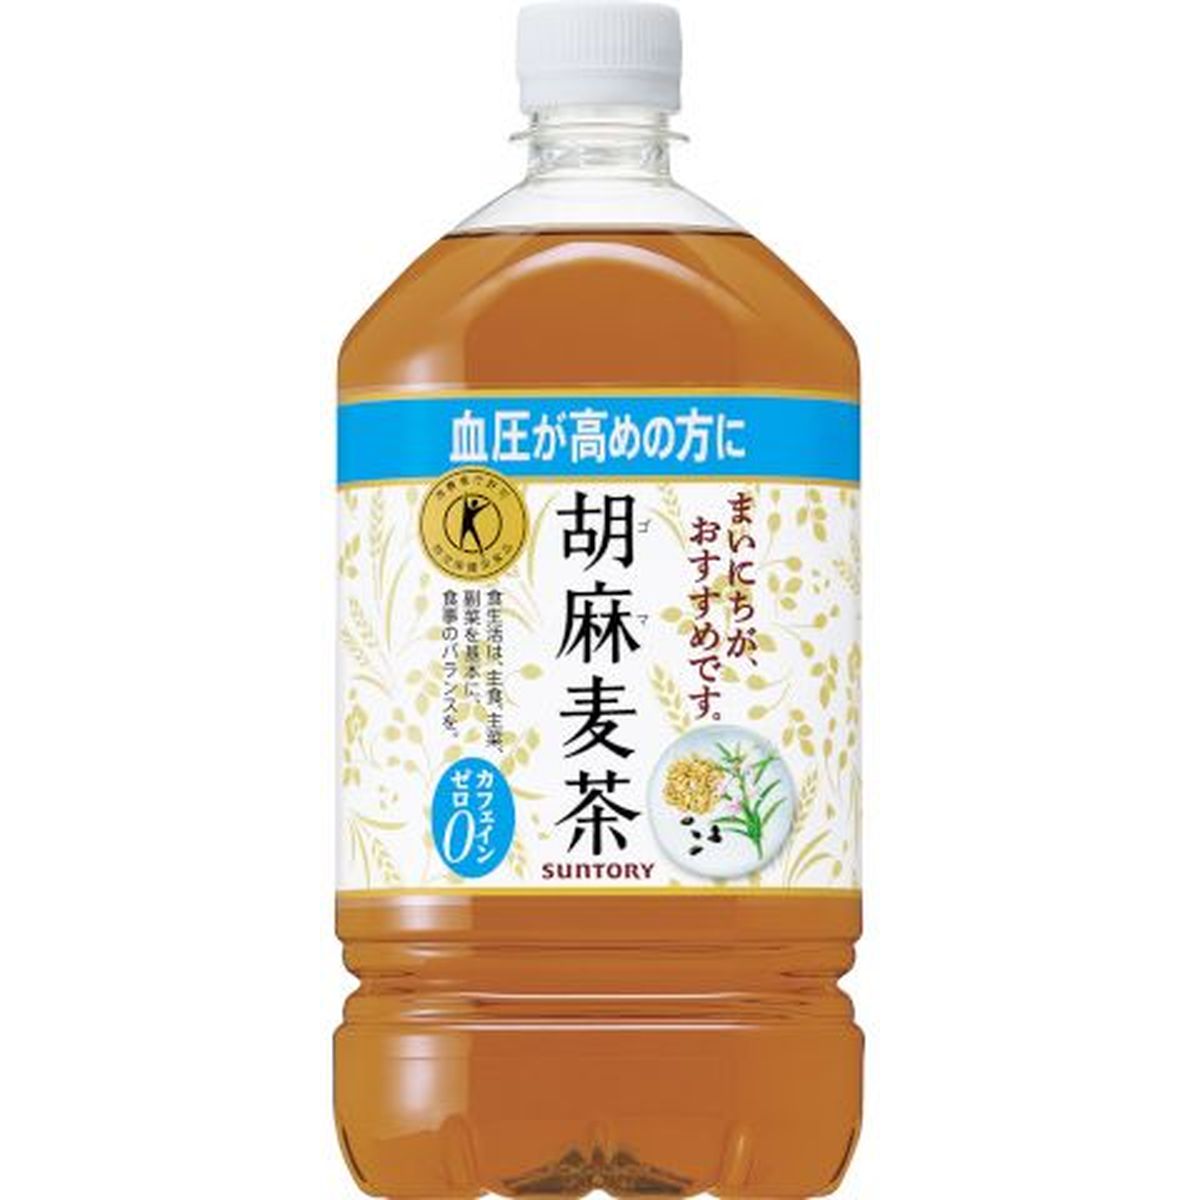 【12個入リ】サントリー 胡麻麦茶 ペット 1.05L